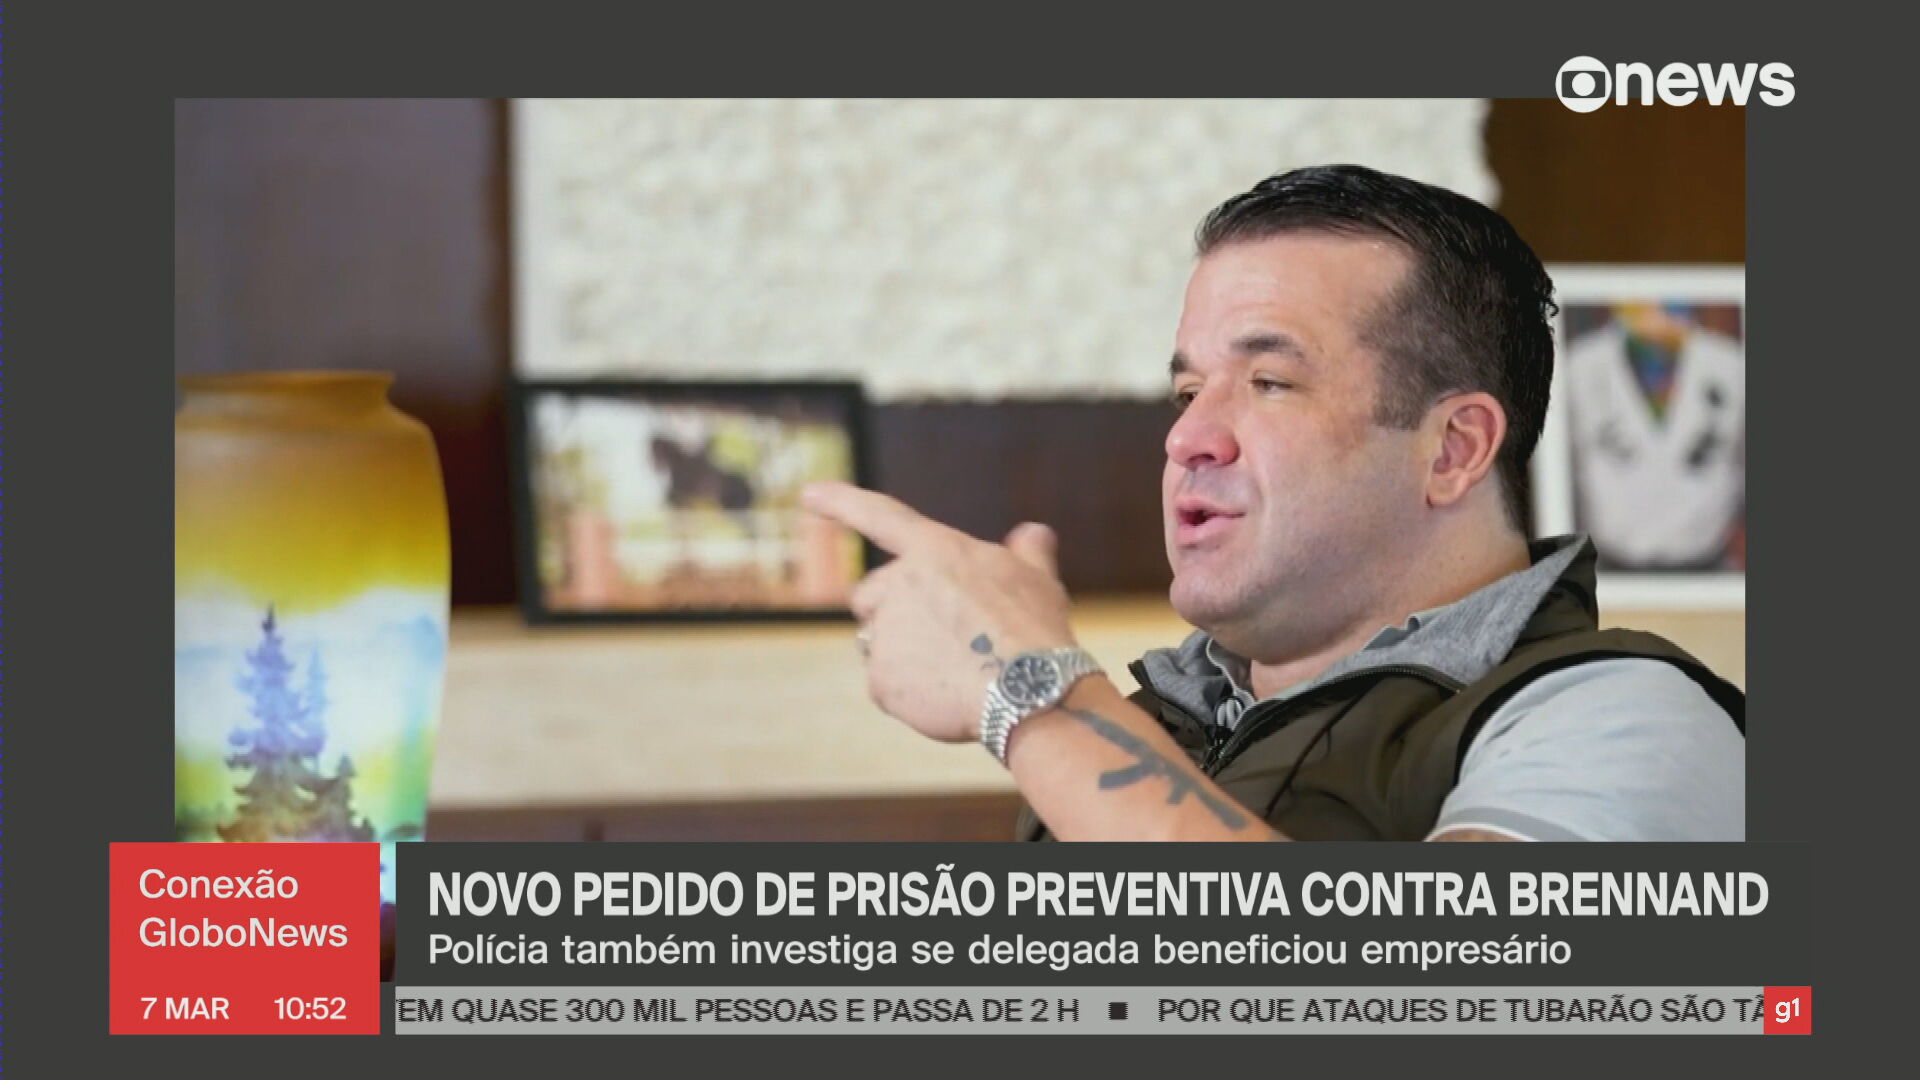 GloboNews on X: A Justiça decretou um novo pedido de prisão